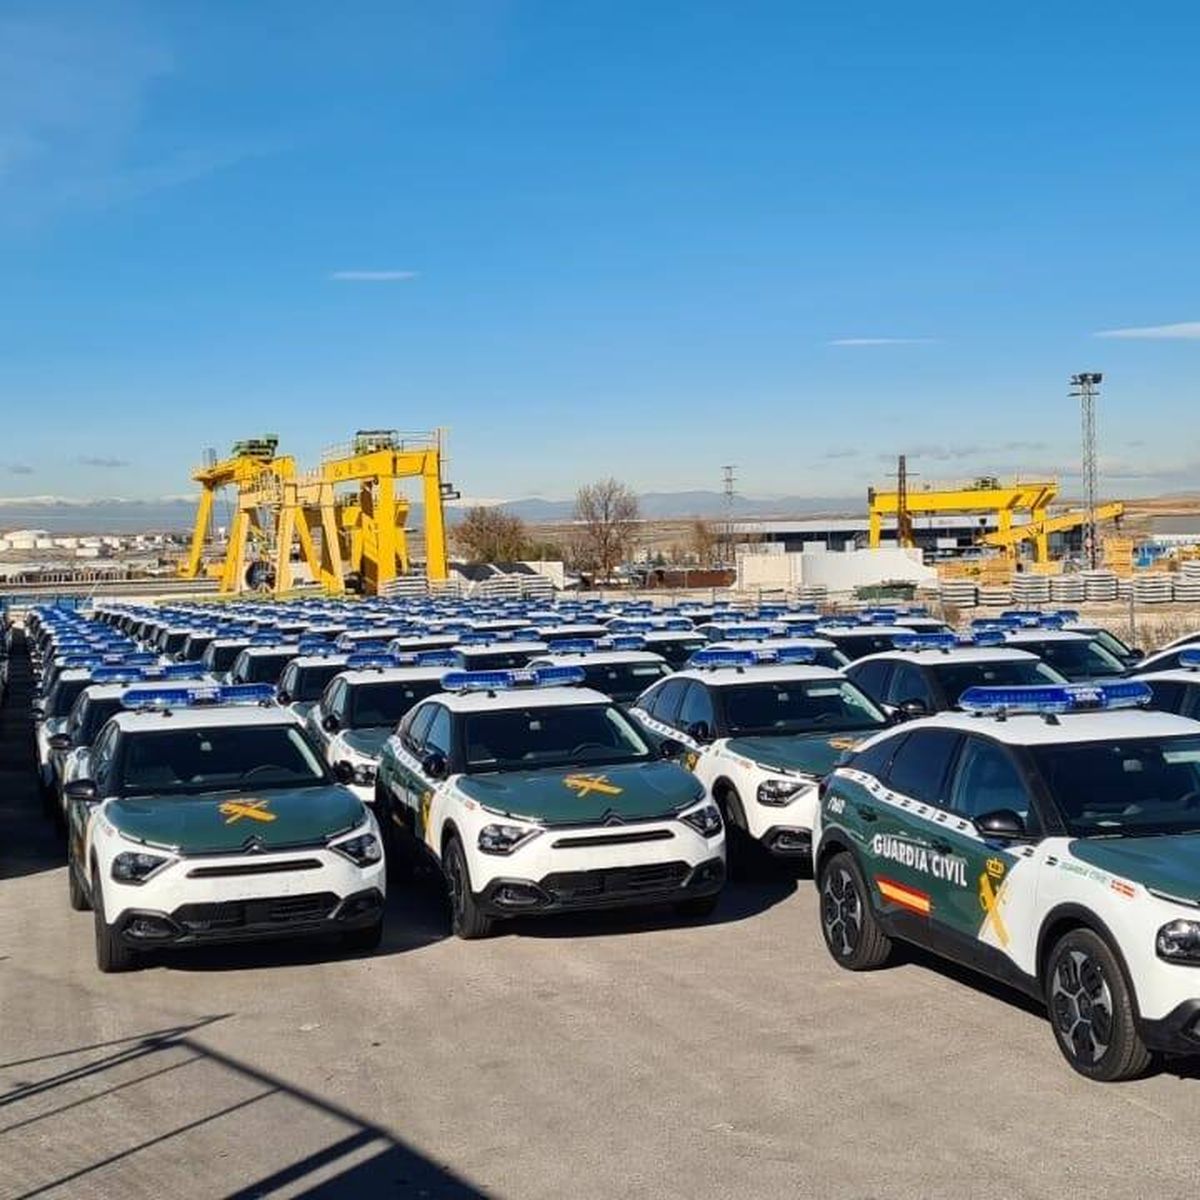 Citroën entrega 444 coches a la Guardia Civil - Citroën Ausol